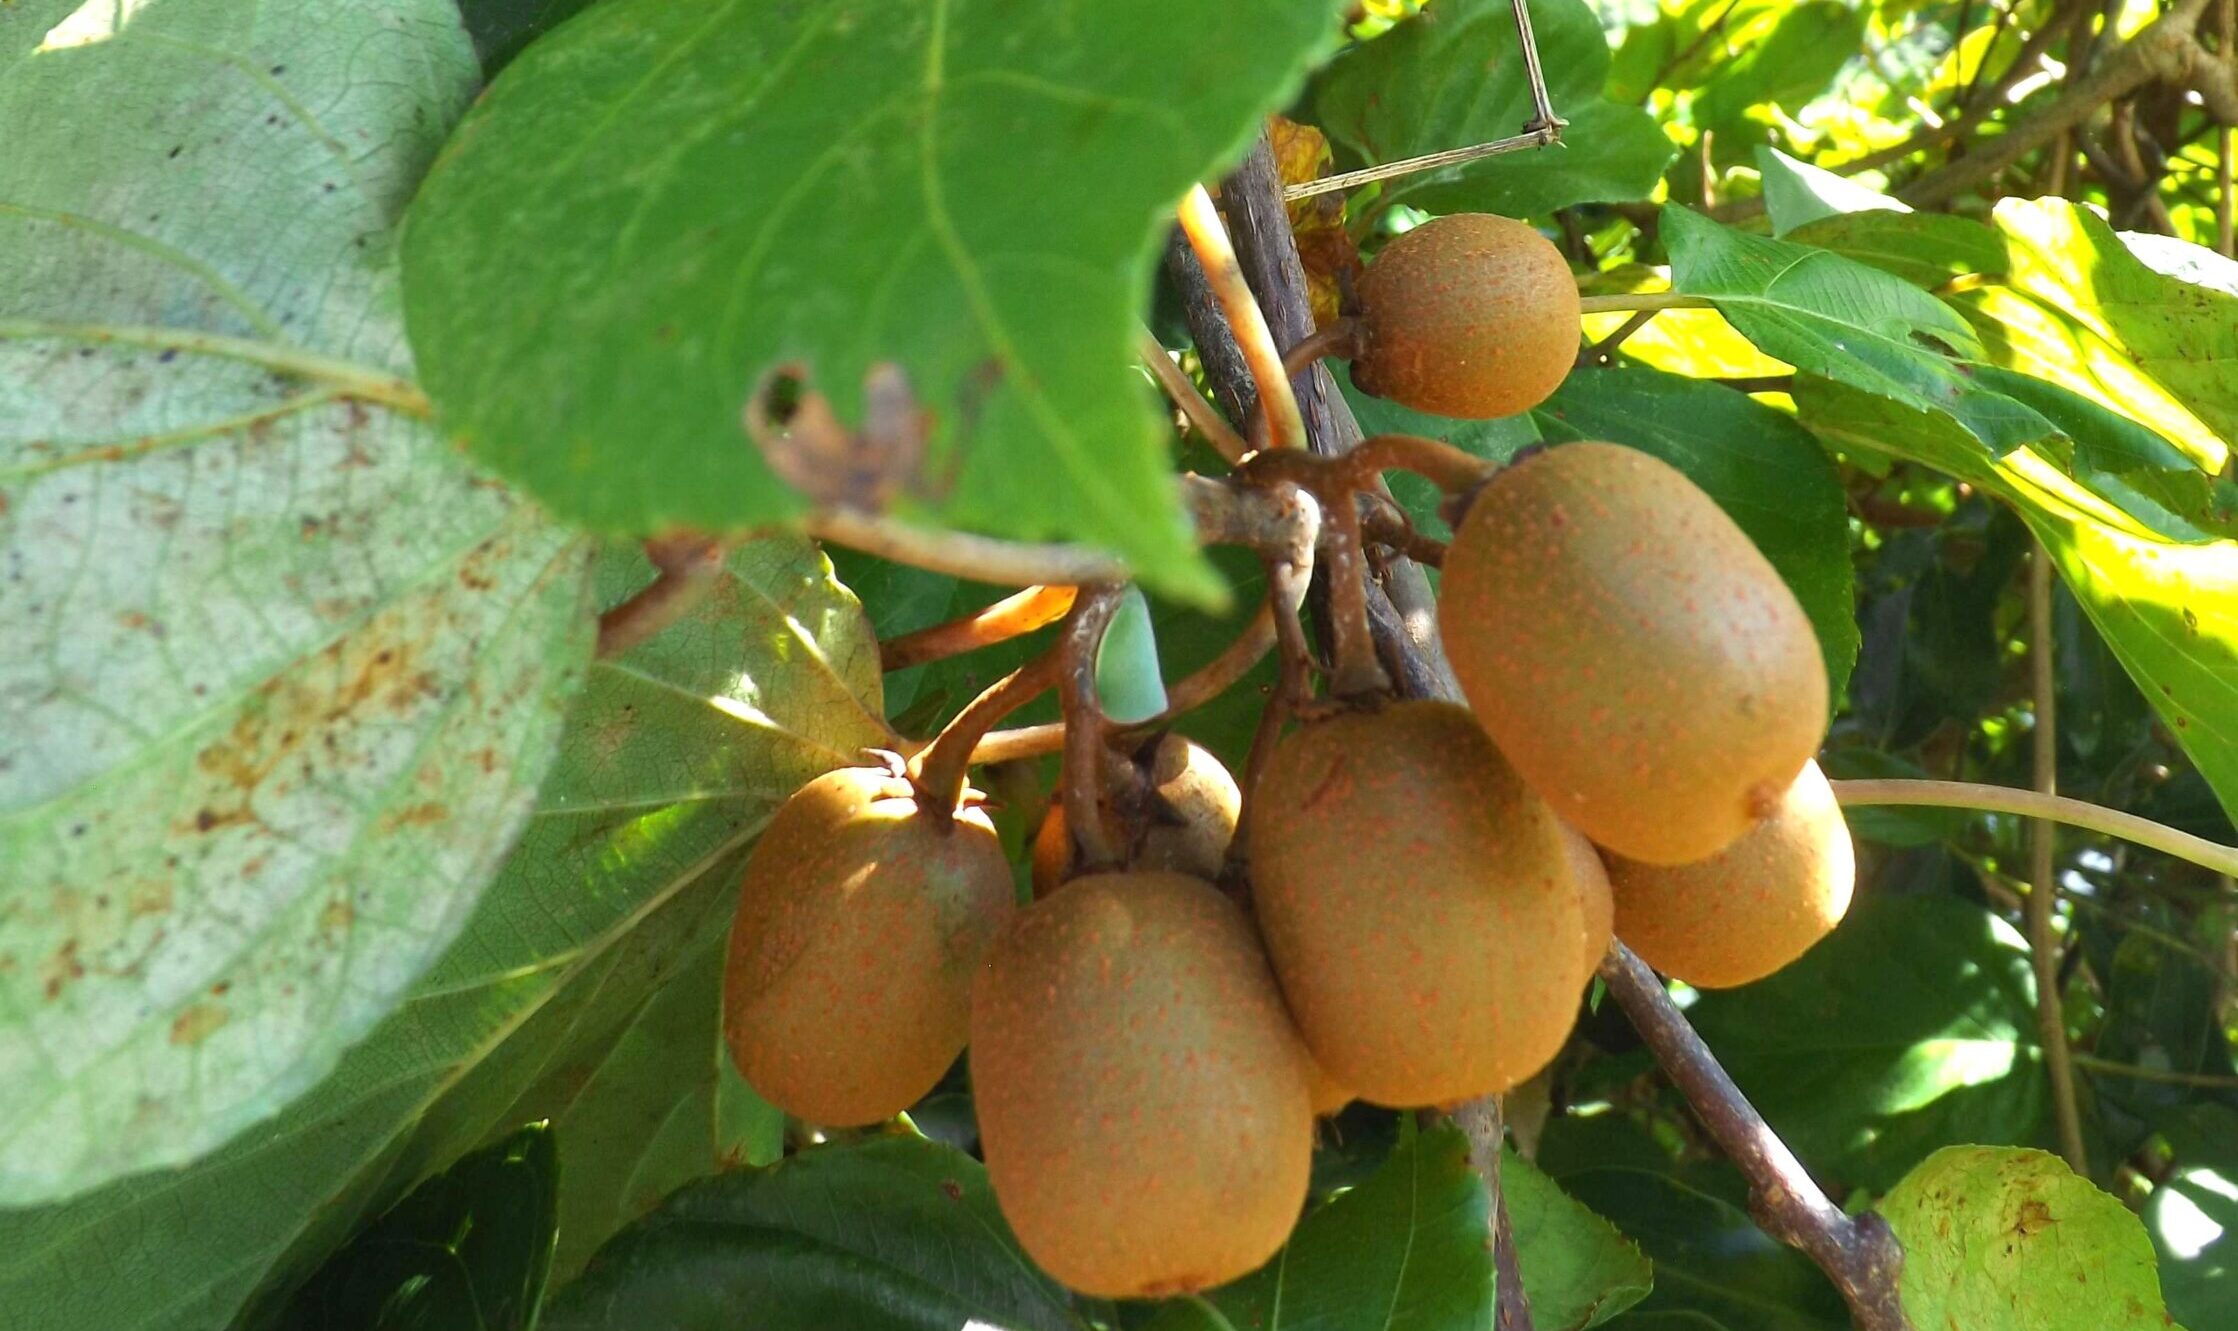 ナシカズラの実が木々の中に自生している様子。